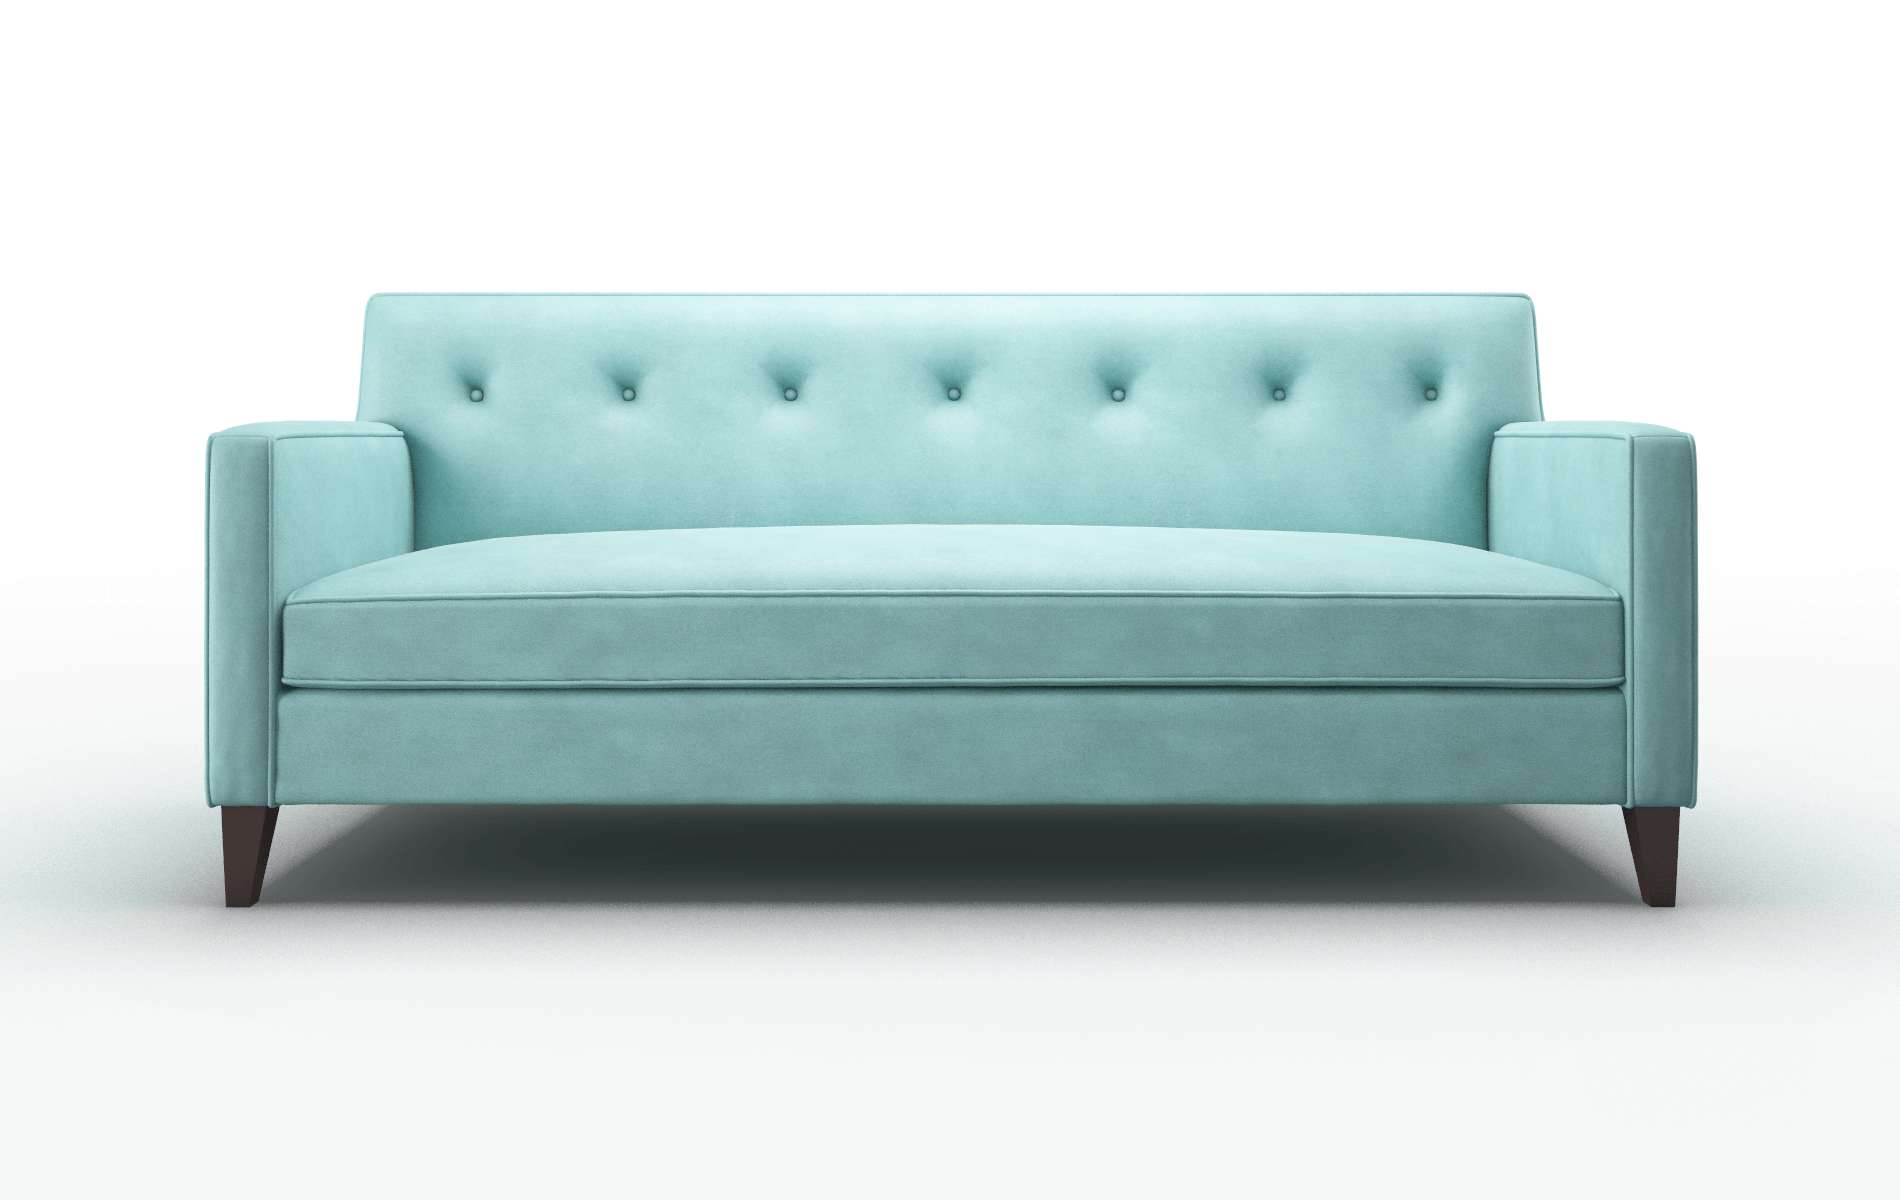 Harper Curious Turquoise Sofa espresso legs 1